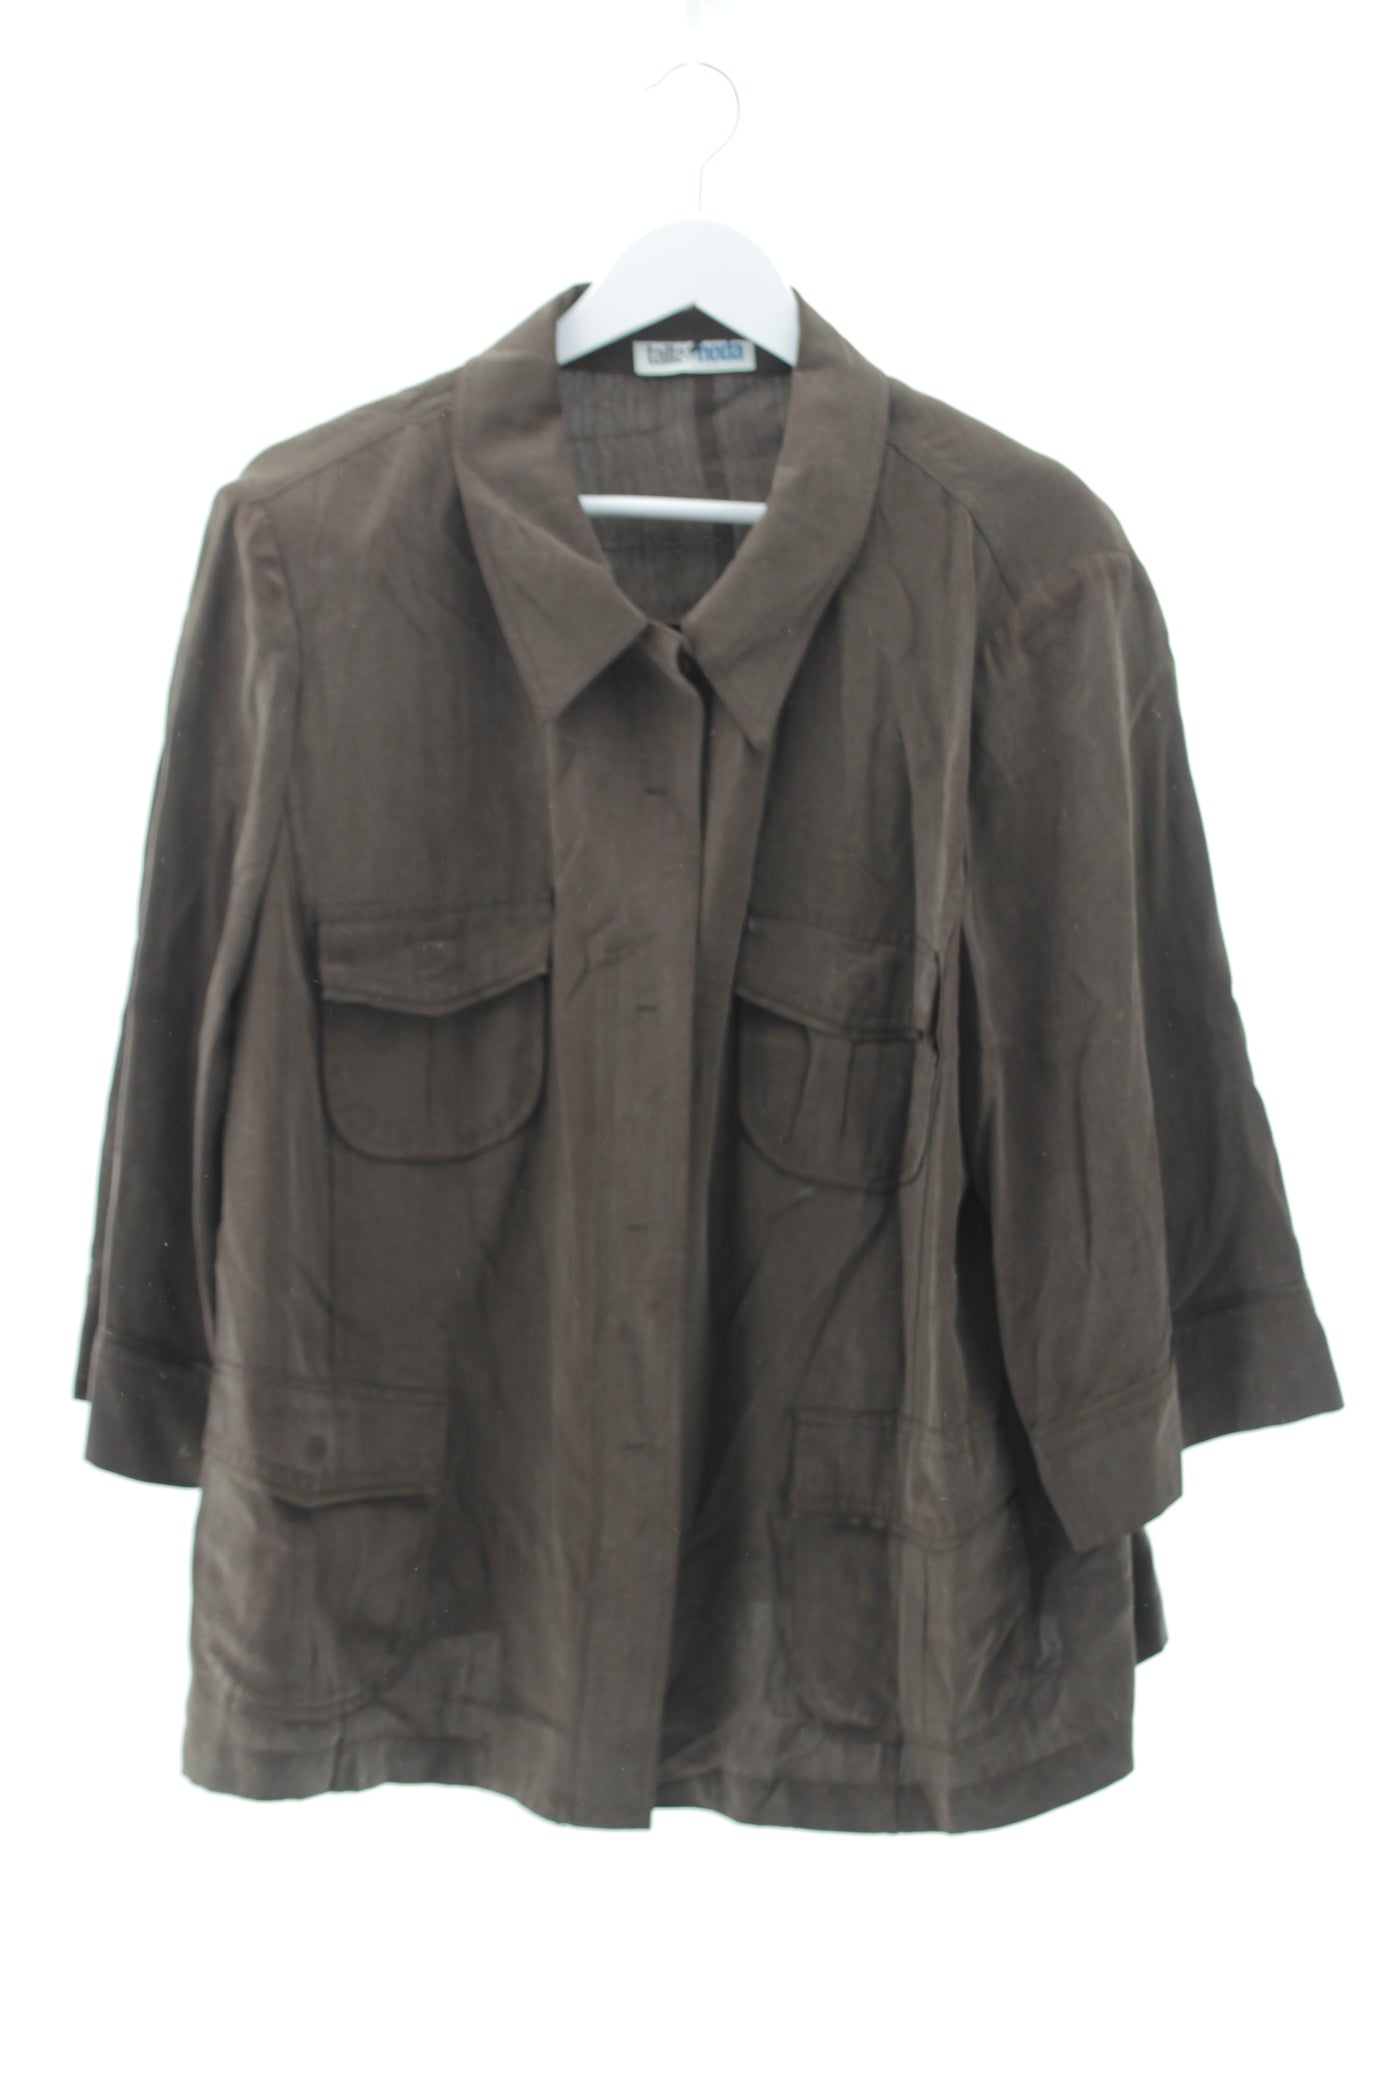 Camisa tipo lino marrón con bolsillos